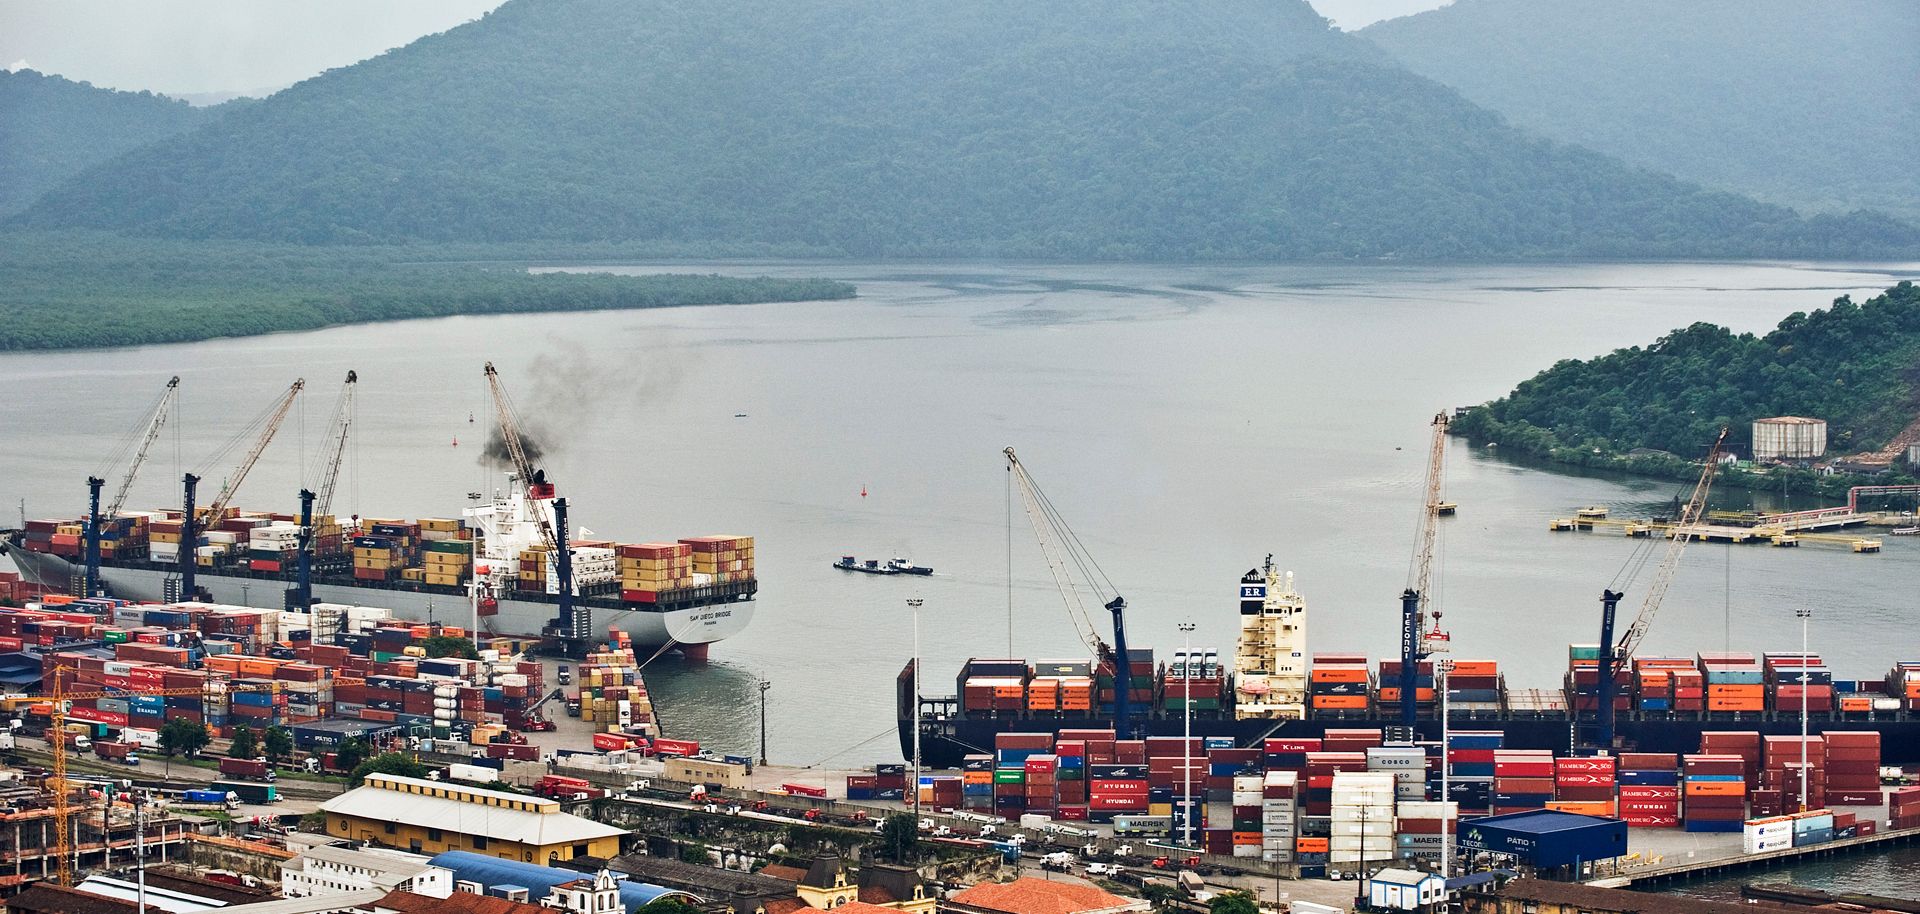 The port of Santos in Brazil.